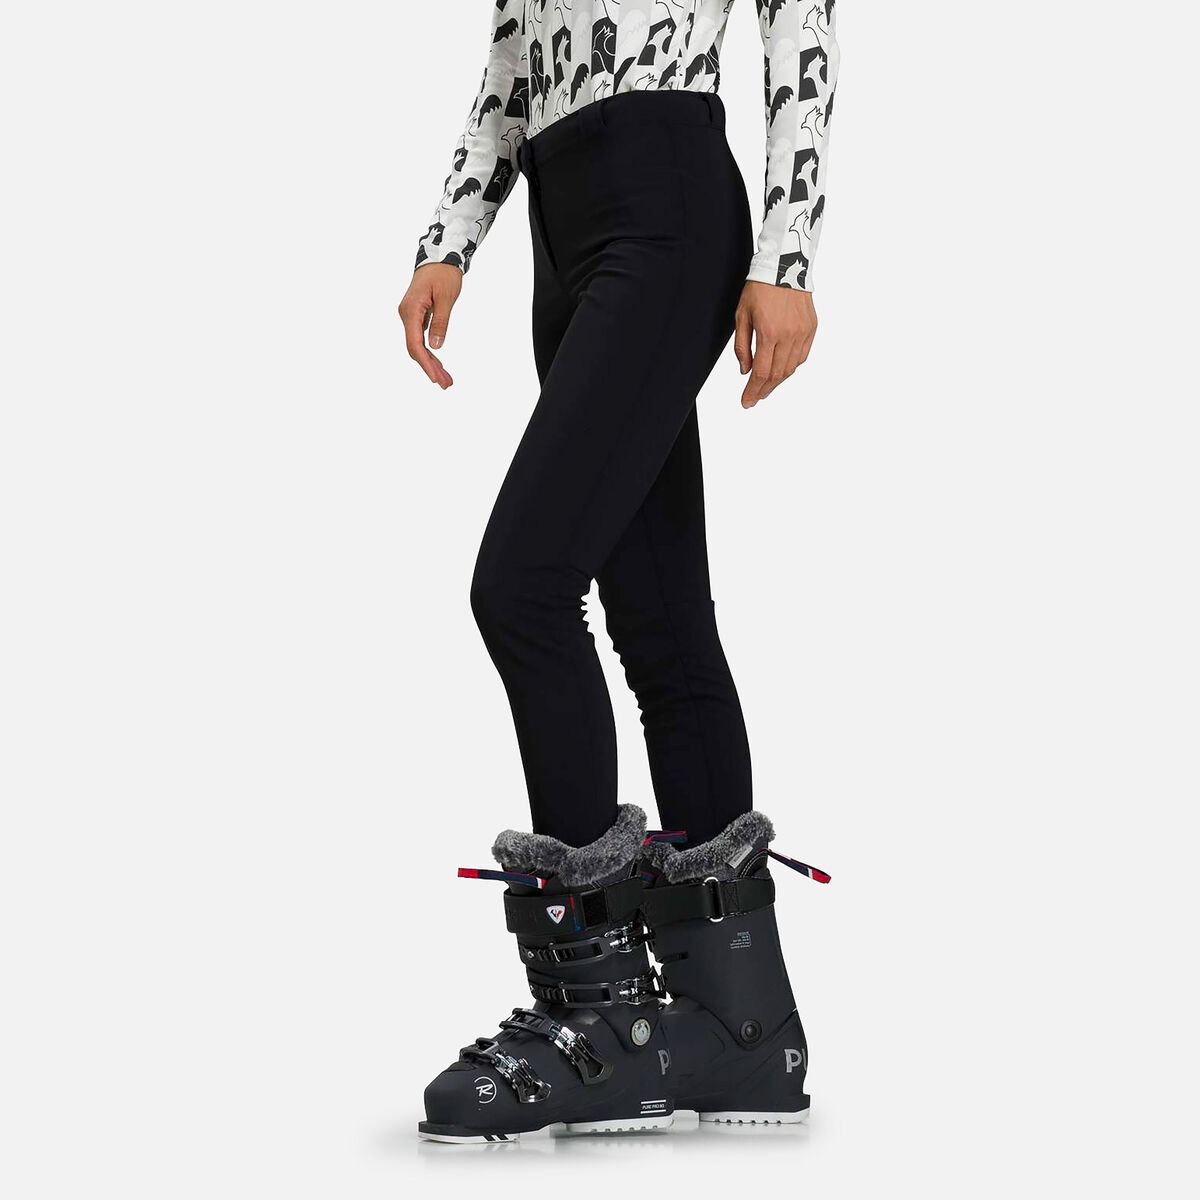 Pantalones fuseau de esquí Ski para mujer